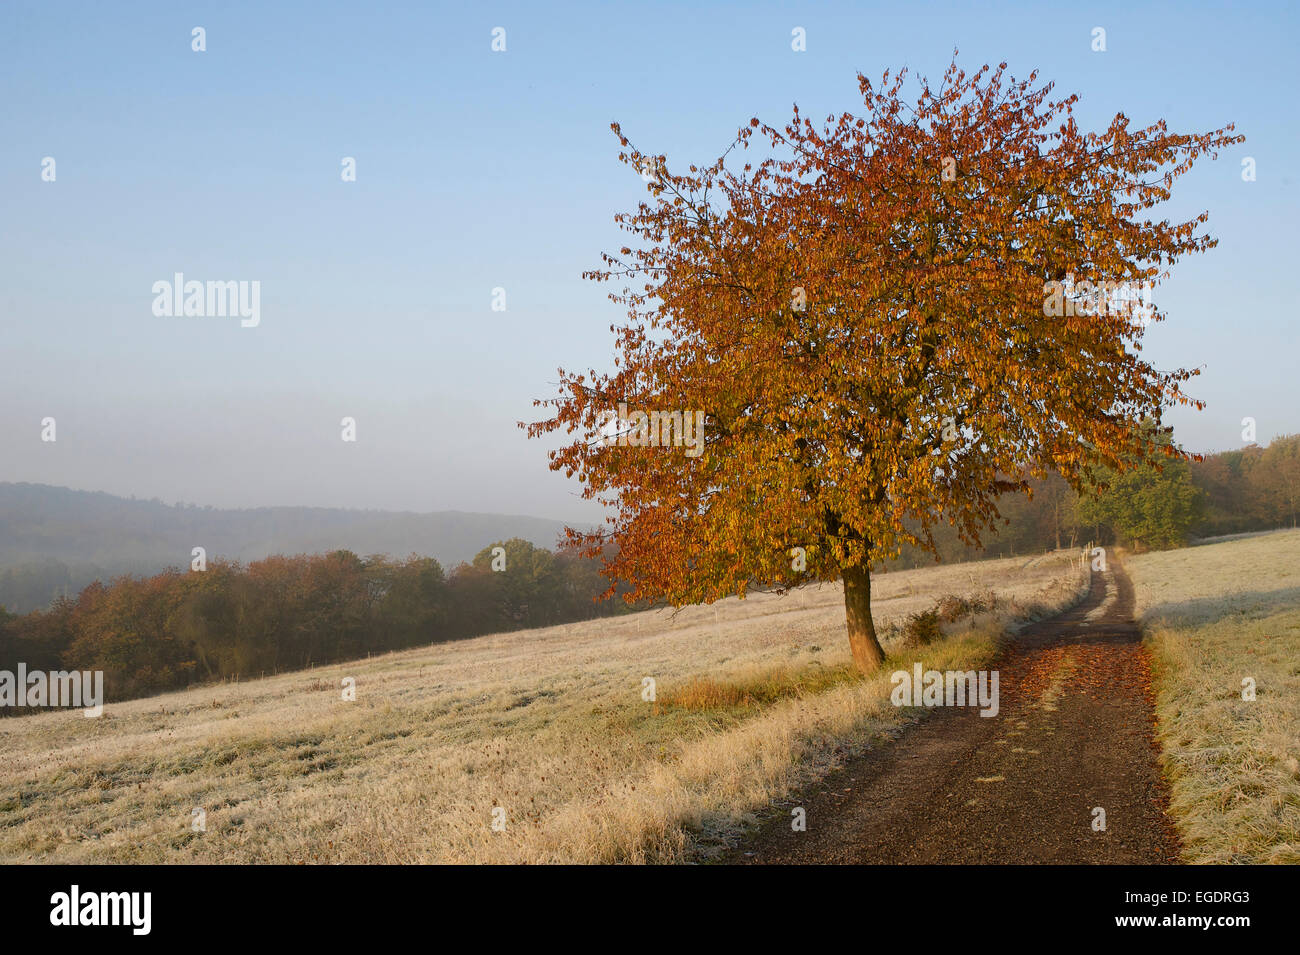 Pista agrícola entre pastos cubiertos de escarcha, colores de otoño cerezo en primer plano, bosque y colinas en el fondo, Hesse, Alemania Central Foto de stock